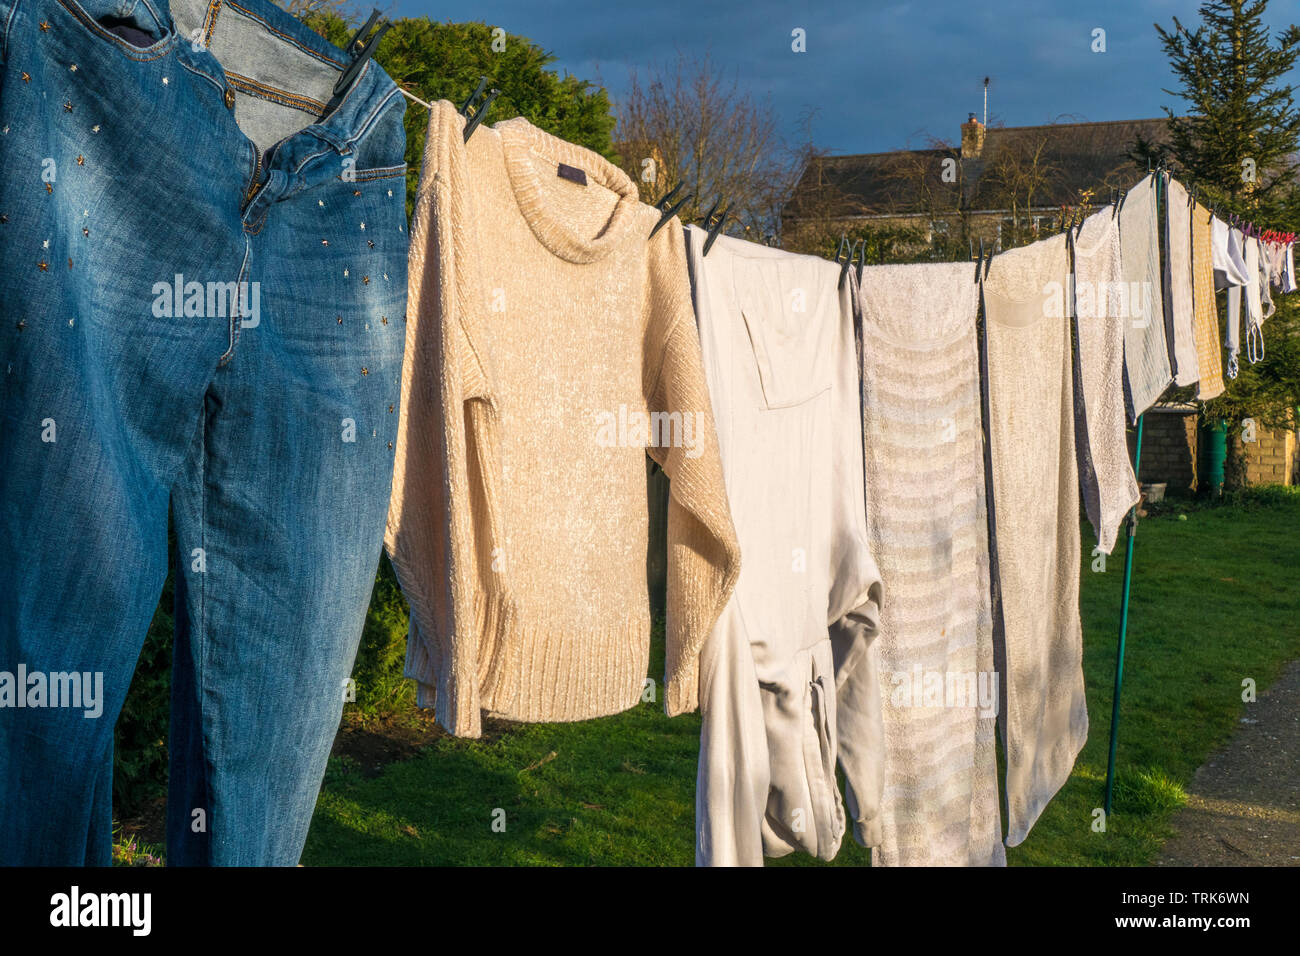 Vista laterale del bucato domestico di vestiti bagnati e asciugamani, ancorato e appesa ad asciugare su una linea di lavaggio nel caldo sole del pomeriggio. Inghilterra, Regno Unito. Foto Stock